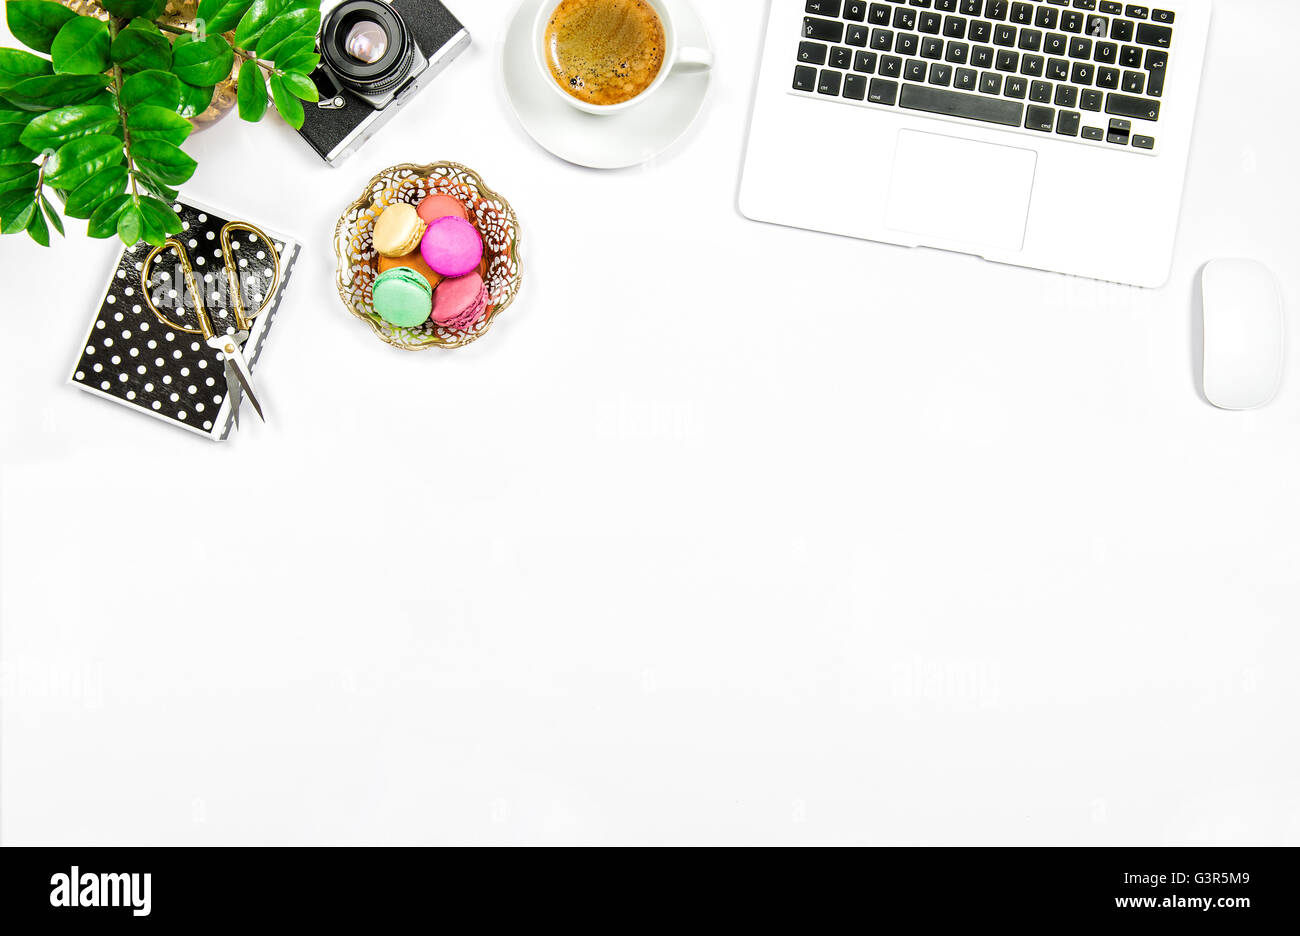 Kreative feminine home-Office-Arbeitsplatz. Kaffee, Kekse Makronen, Laptop-Computer und Grünpflanze auf weißen Tabellenhintergrund Stockfoto